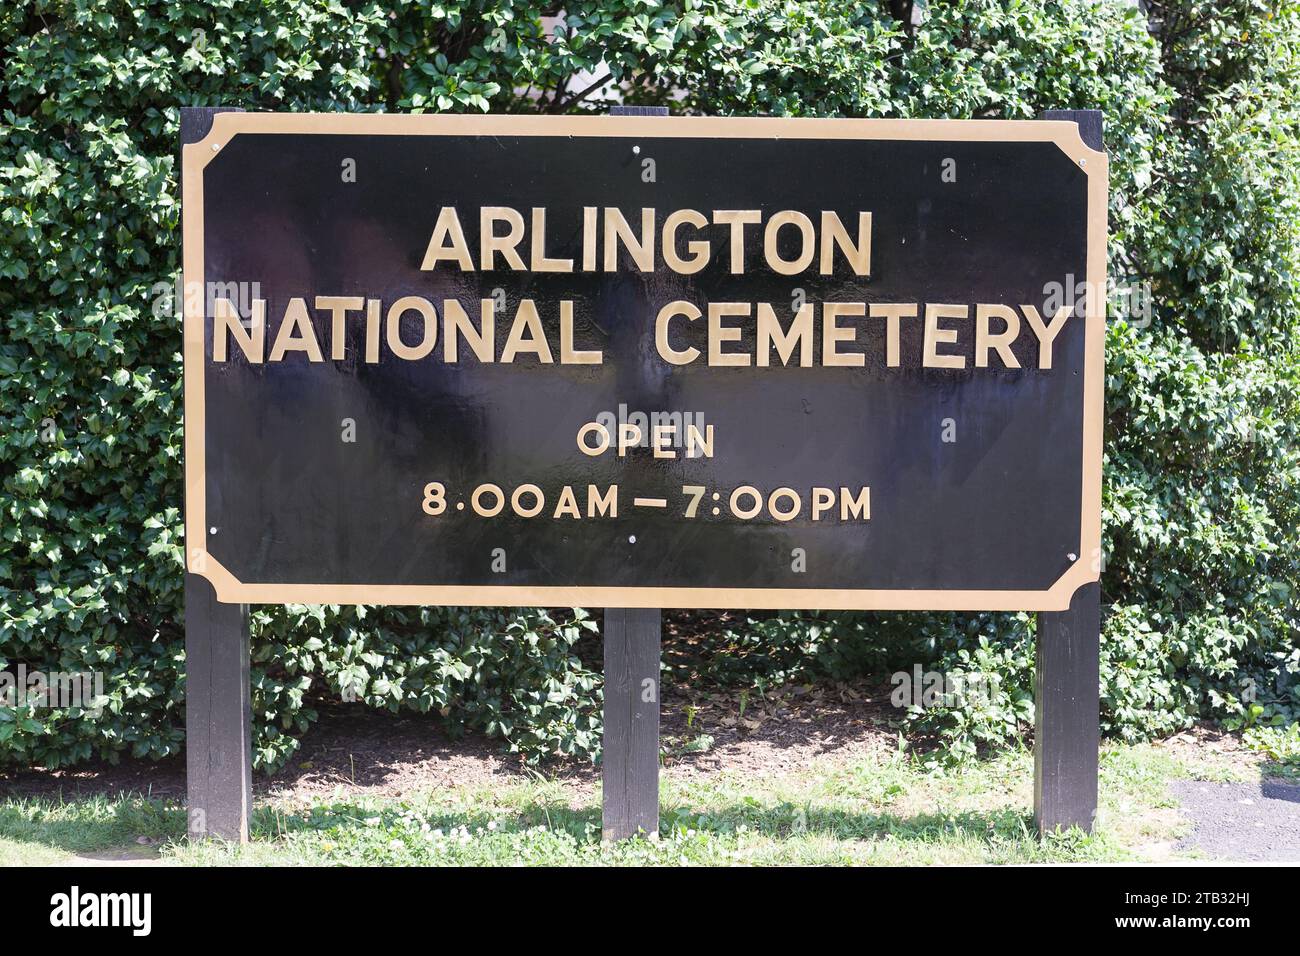 Panneau au cimetière d'Arlington indiquant les heures d'ouverture. Washington, DC, États-Unis Banque D'Images